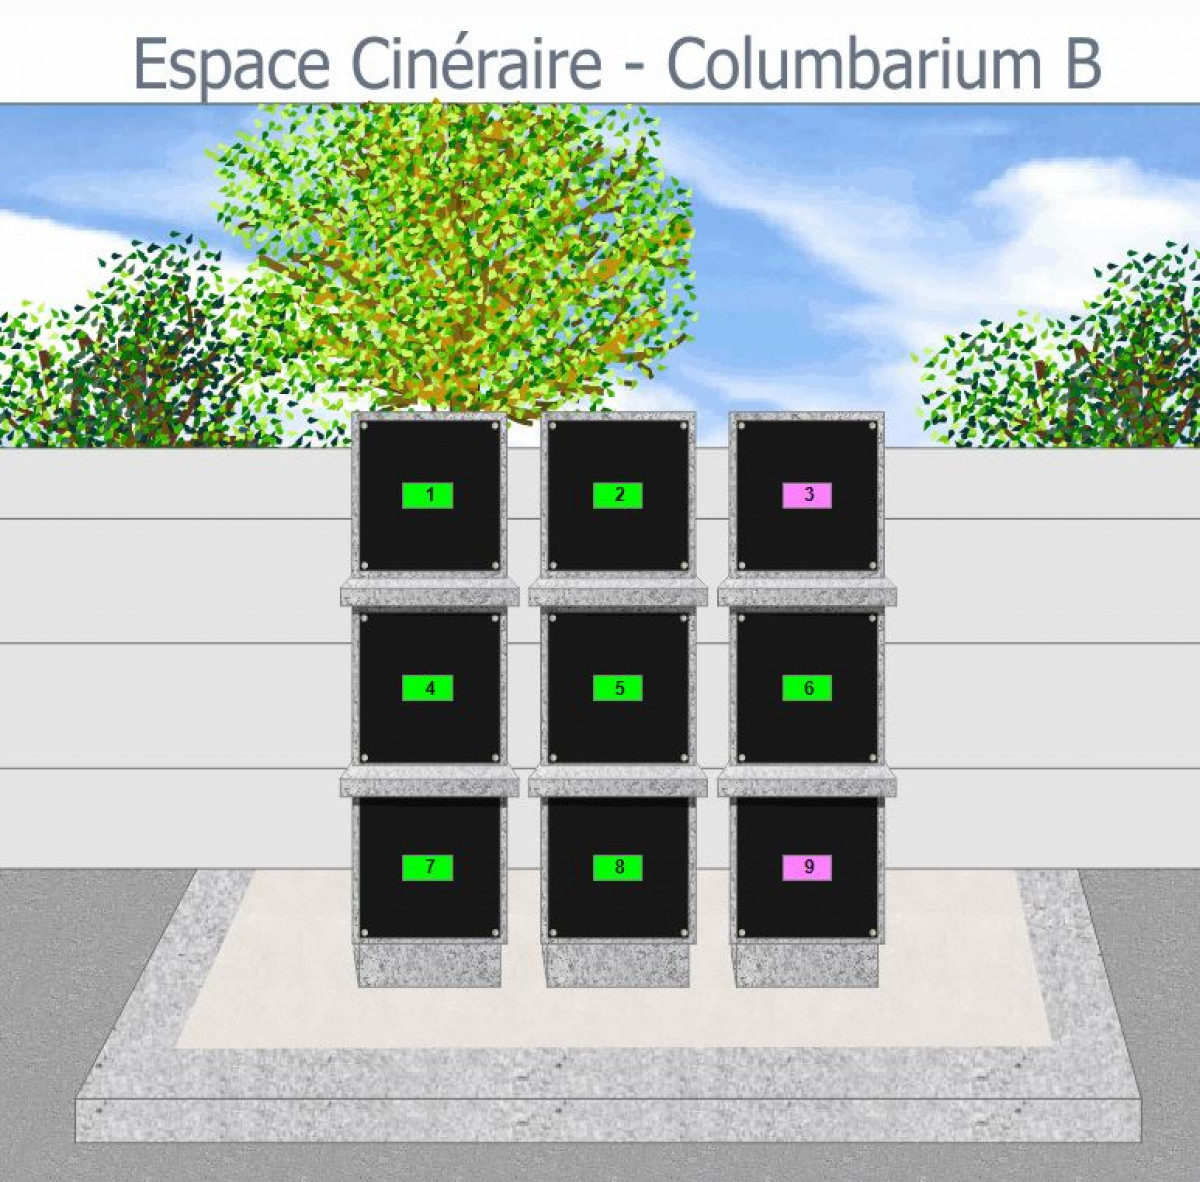 Columbarium B